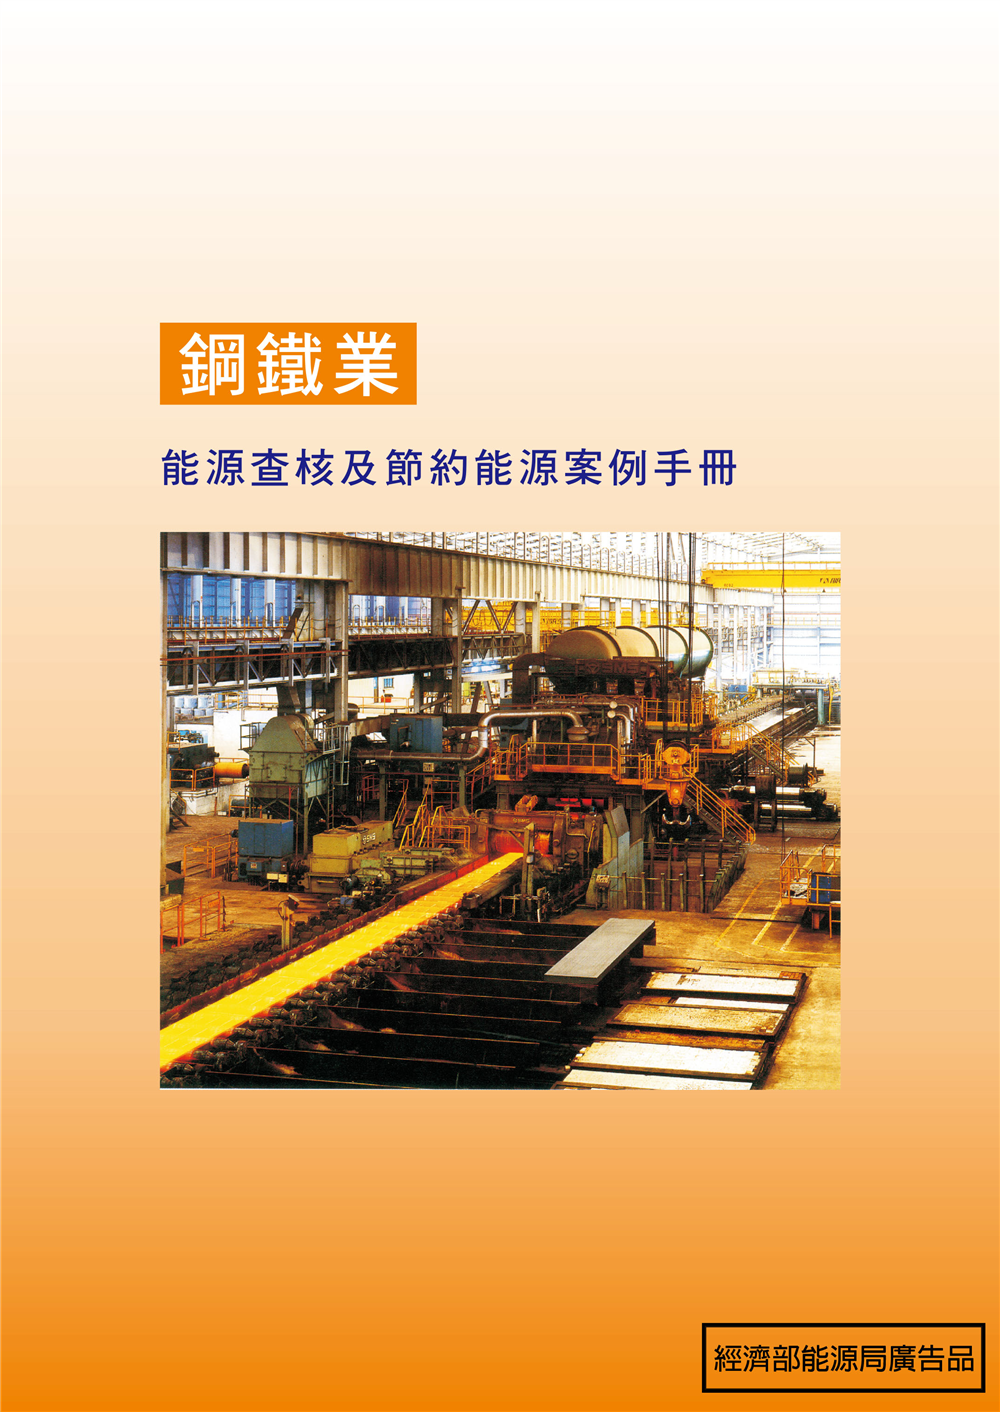 能源查核與節約能源案例手冊-鋼鐵業 的封面